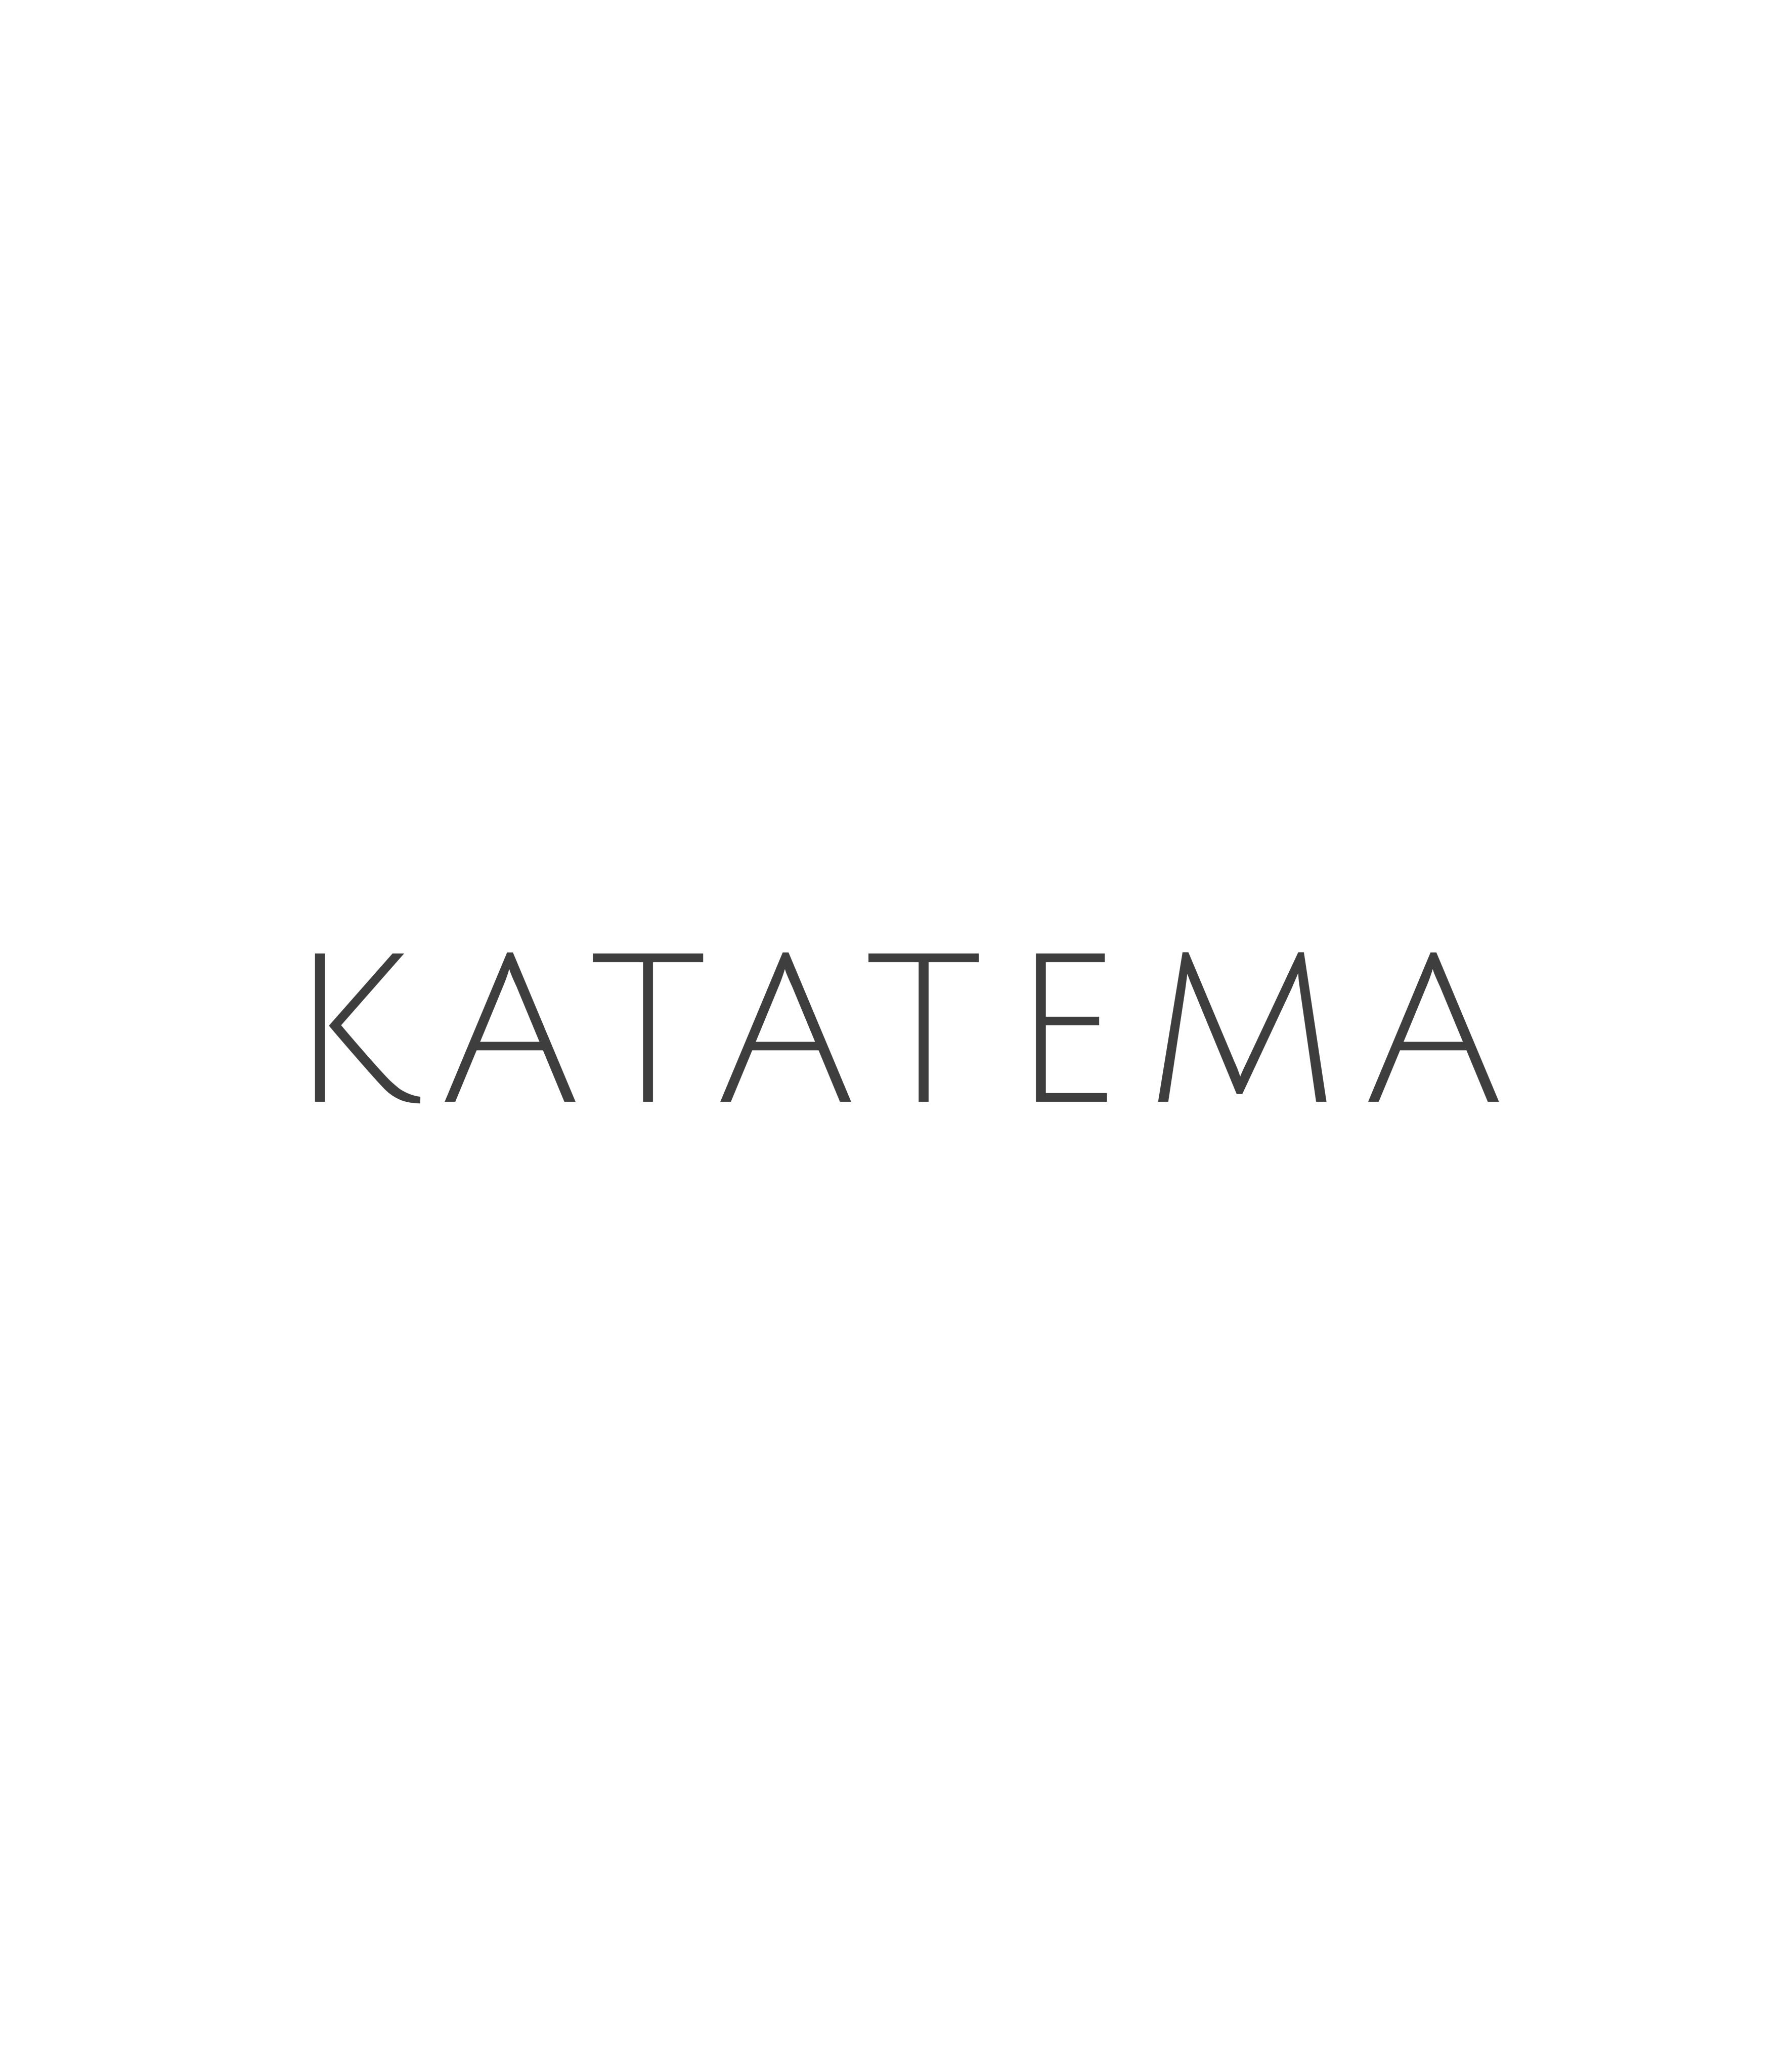 What's KATATEMA?